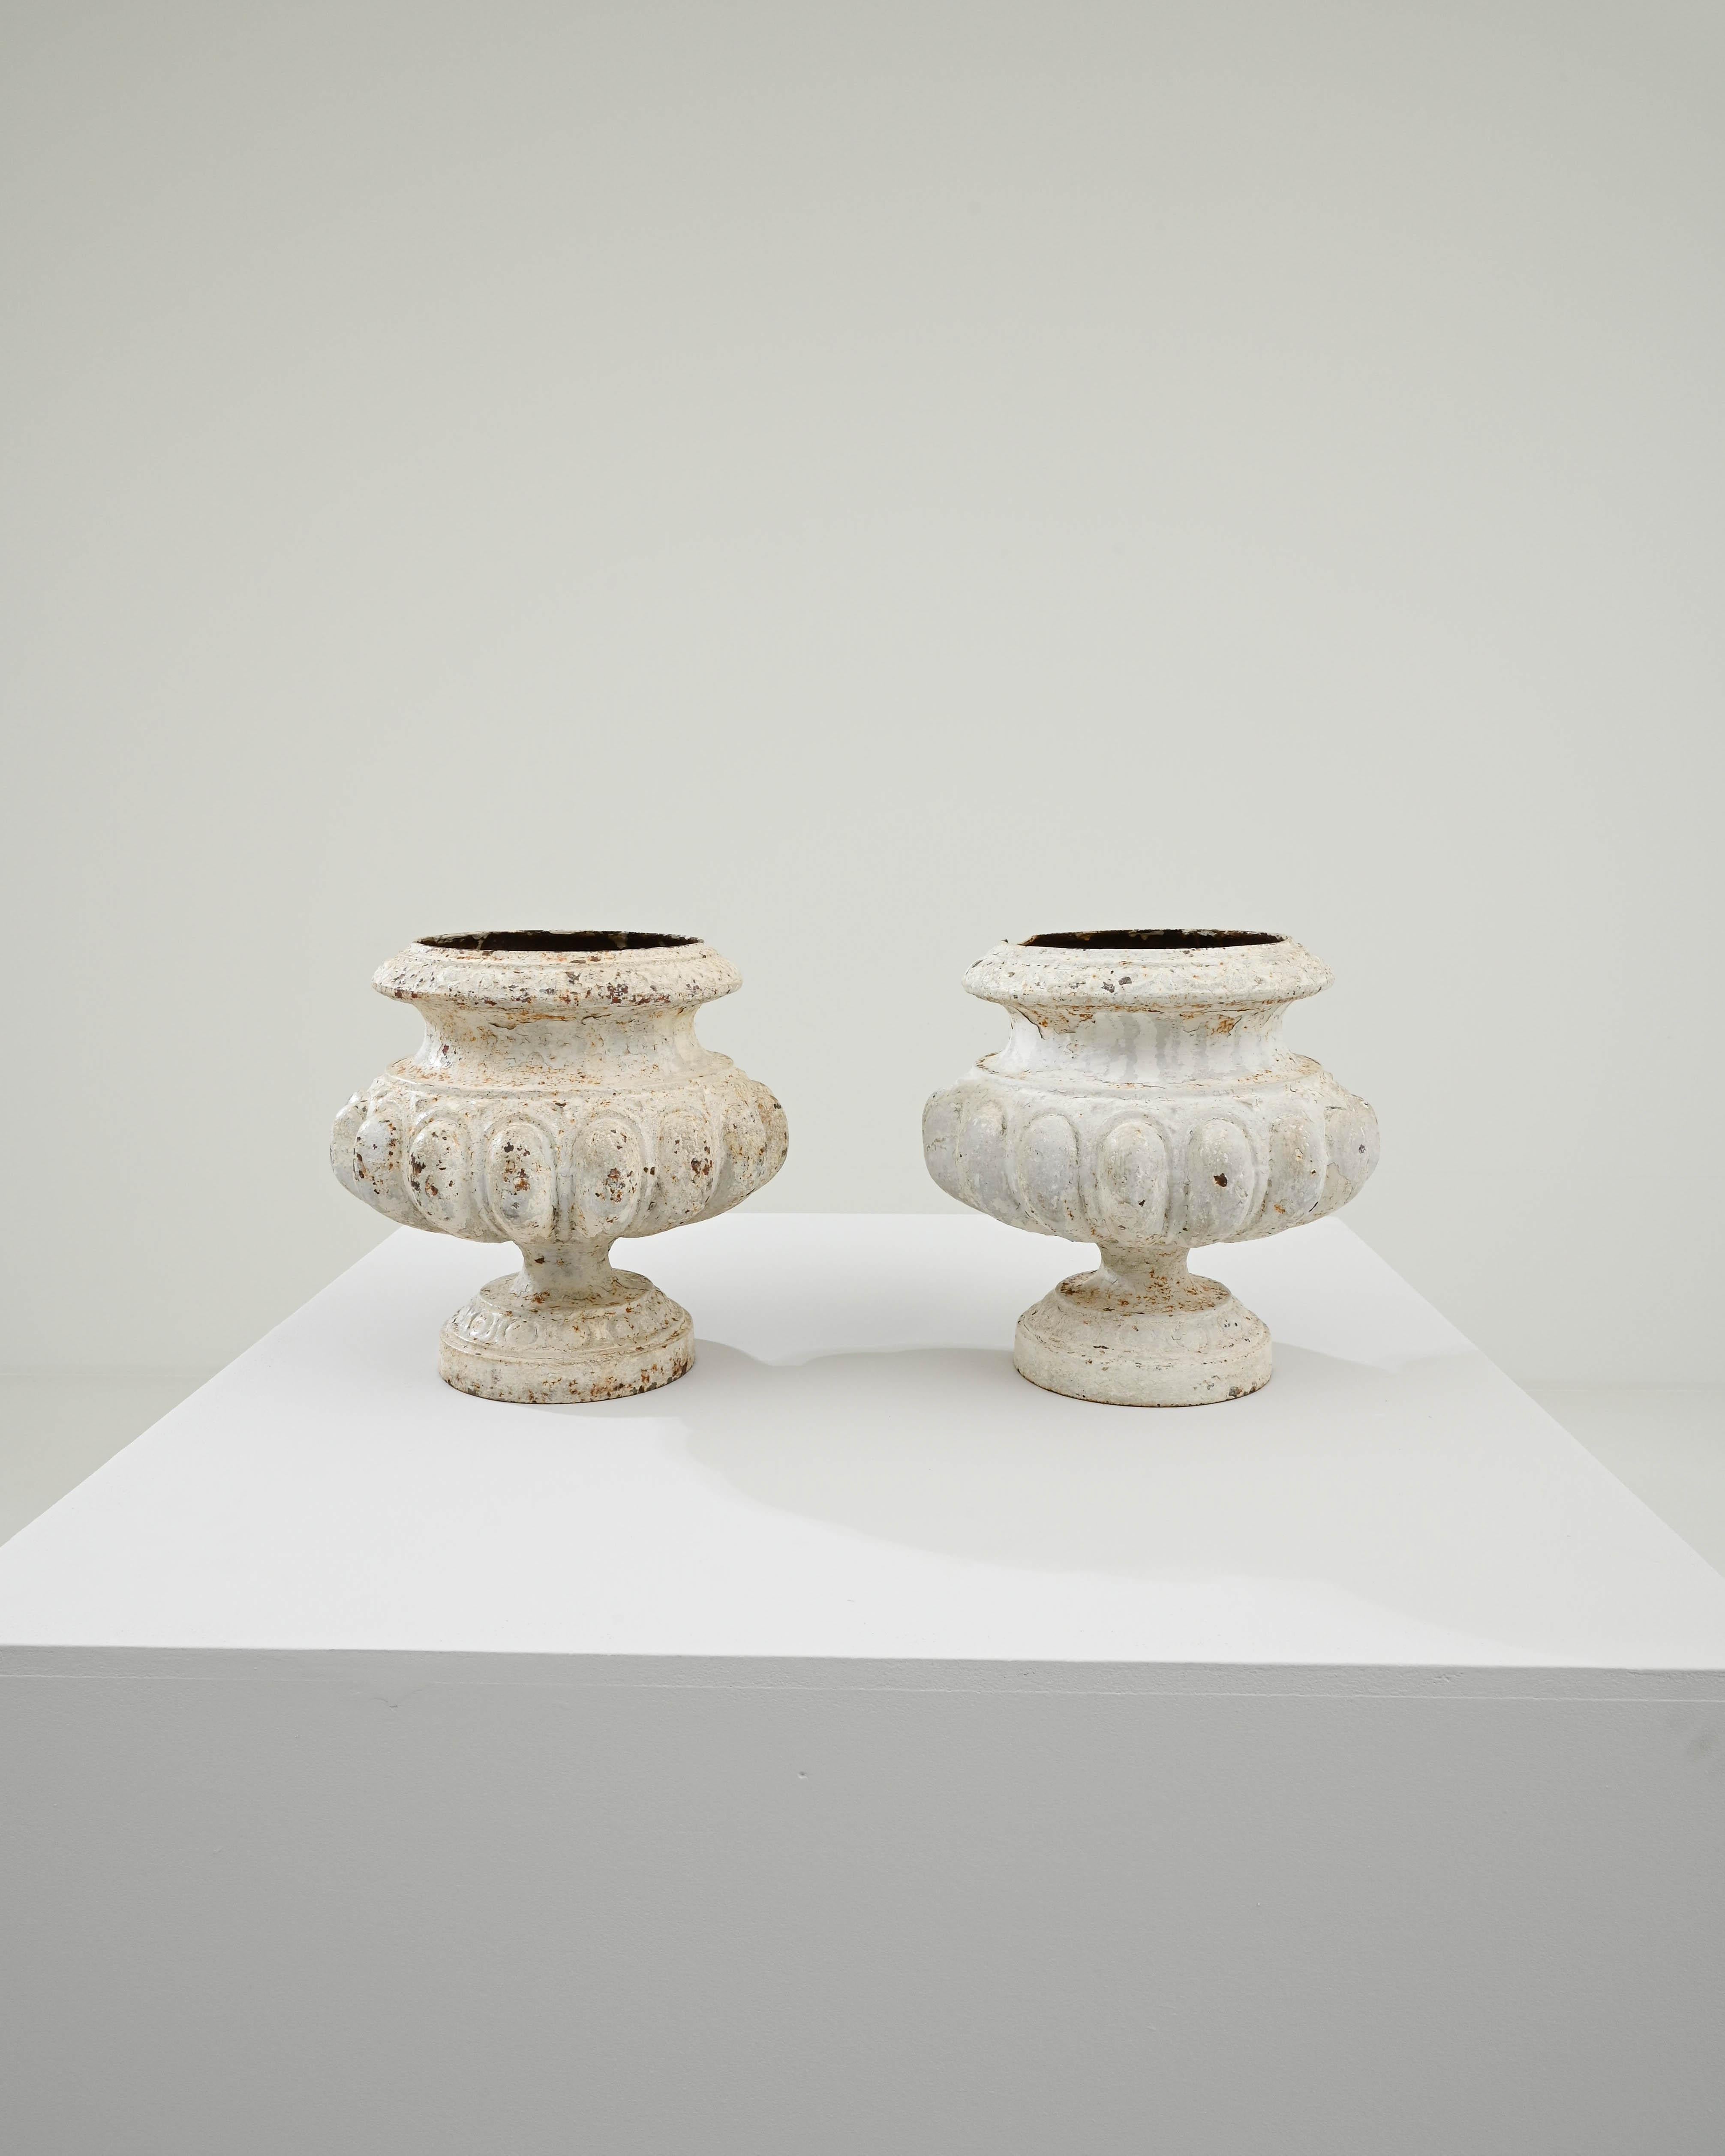 Ein Paar gusseiserne Pflanzgefäße, die im 19. Jahrhundert in Frankreich von Alfred Corneau geschaffen wurden. Elegant geformt und konisch zulaufend, vermitteln diese klassischen Pflanzgefäße ein Gefühl von klassischer Schönheit und zeitloser